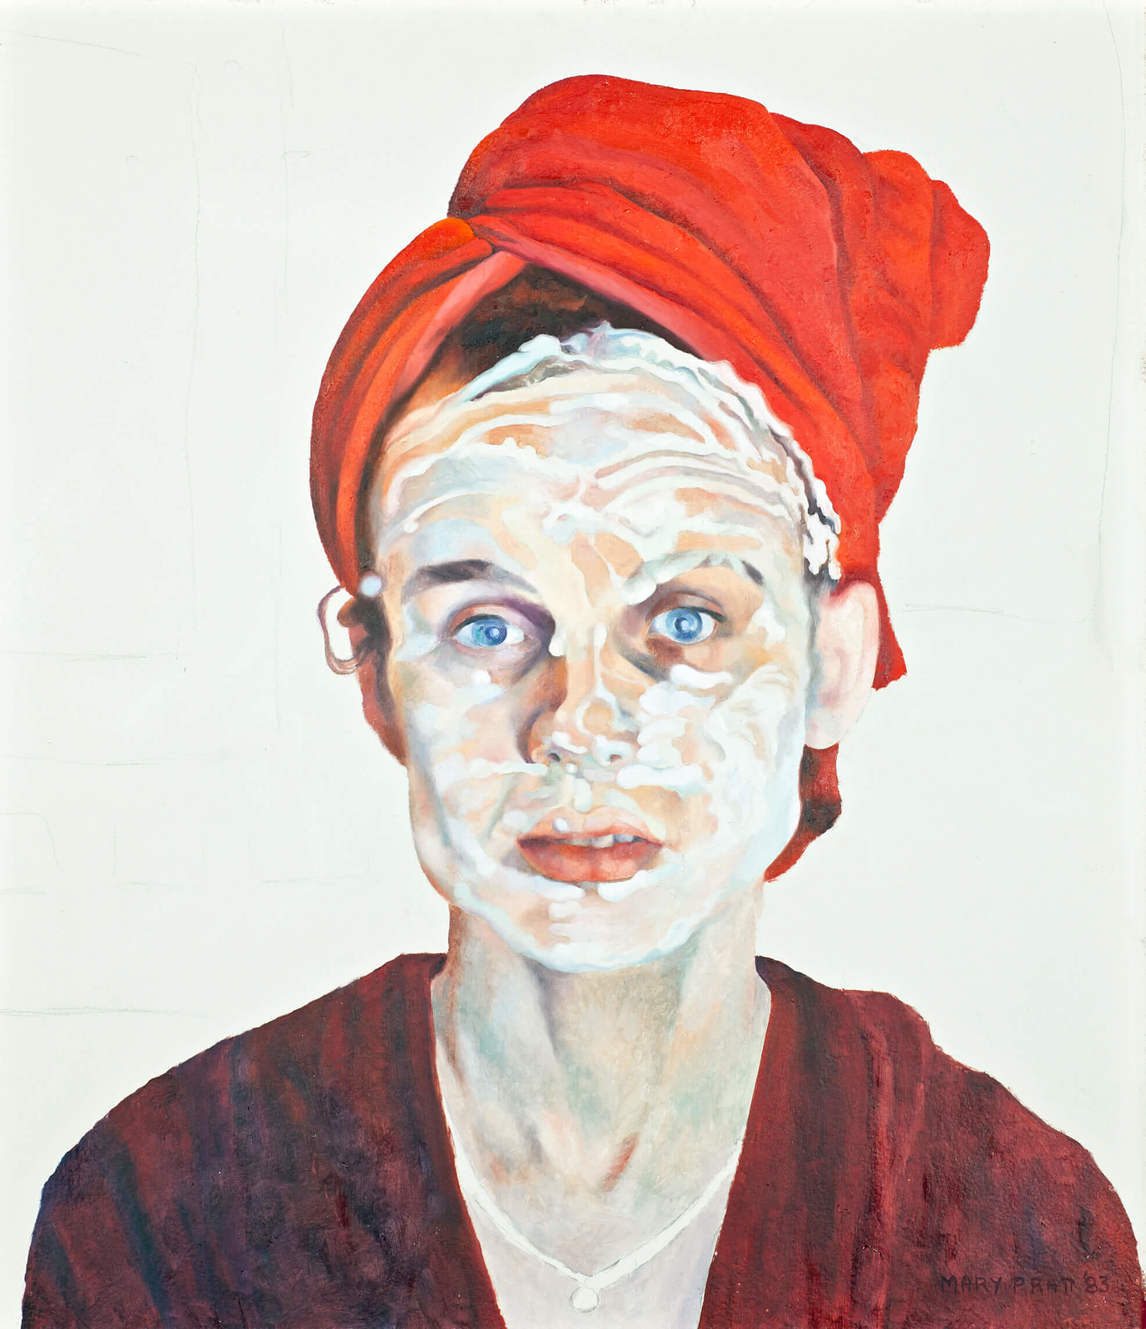 Mary Pratt, Cold Cream (Cold cream), 1983